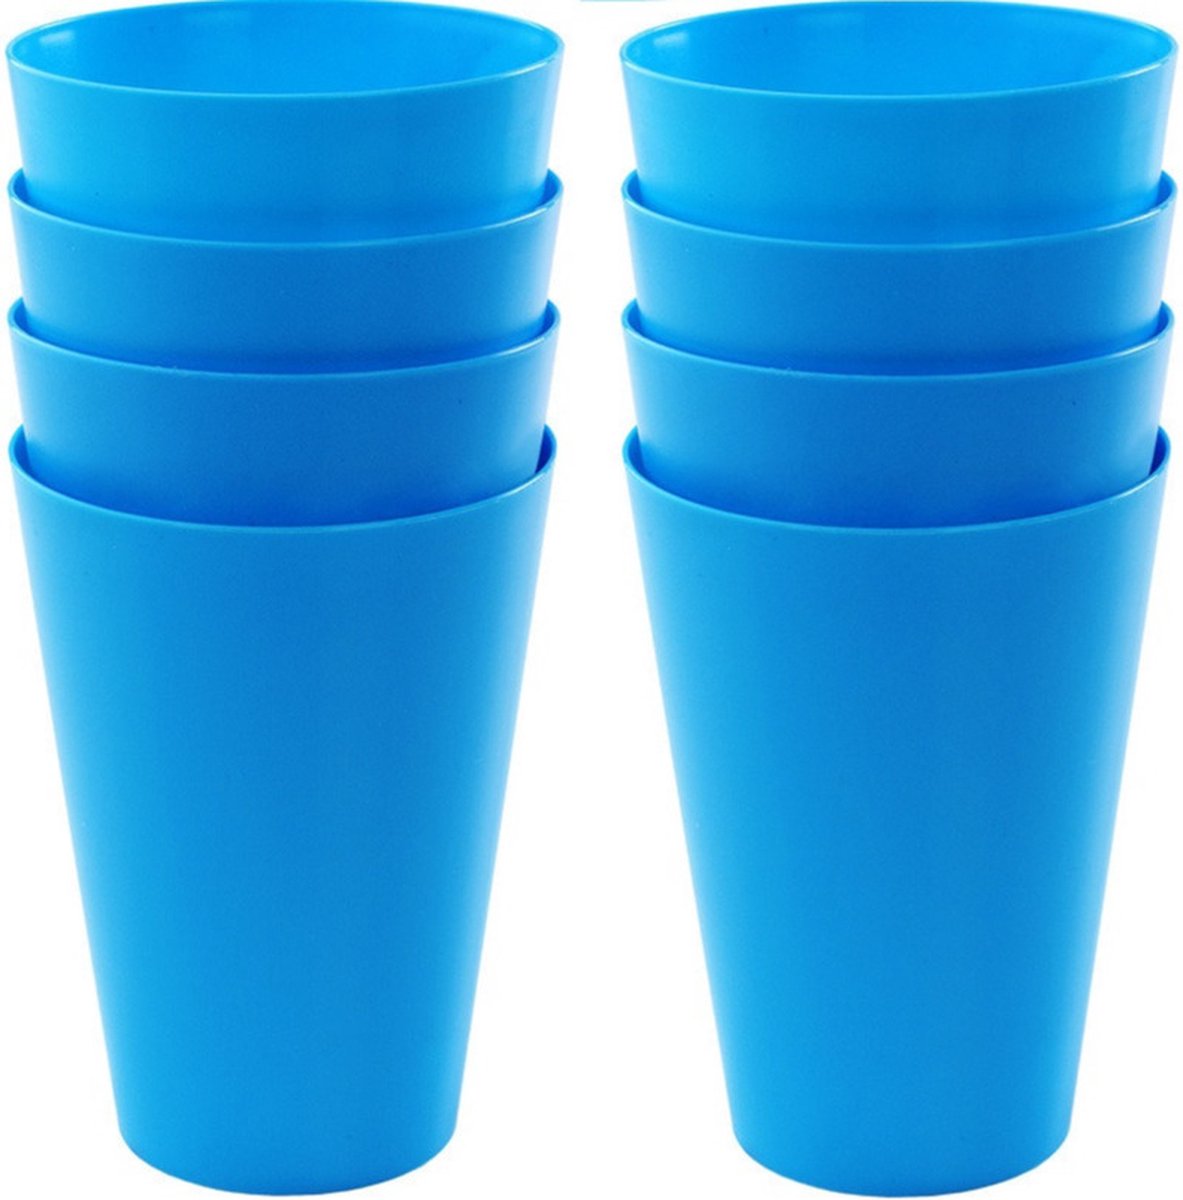 16x drinkbekers van kunststof 430 ml in het blauw - Limonade bekers - Campingservies/picknickservies